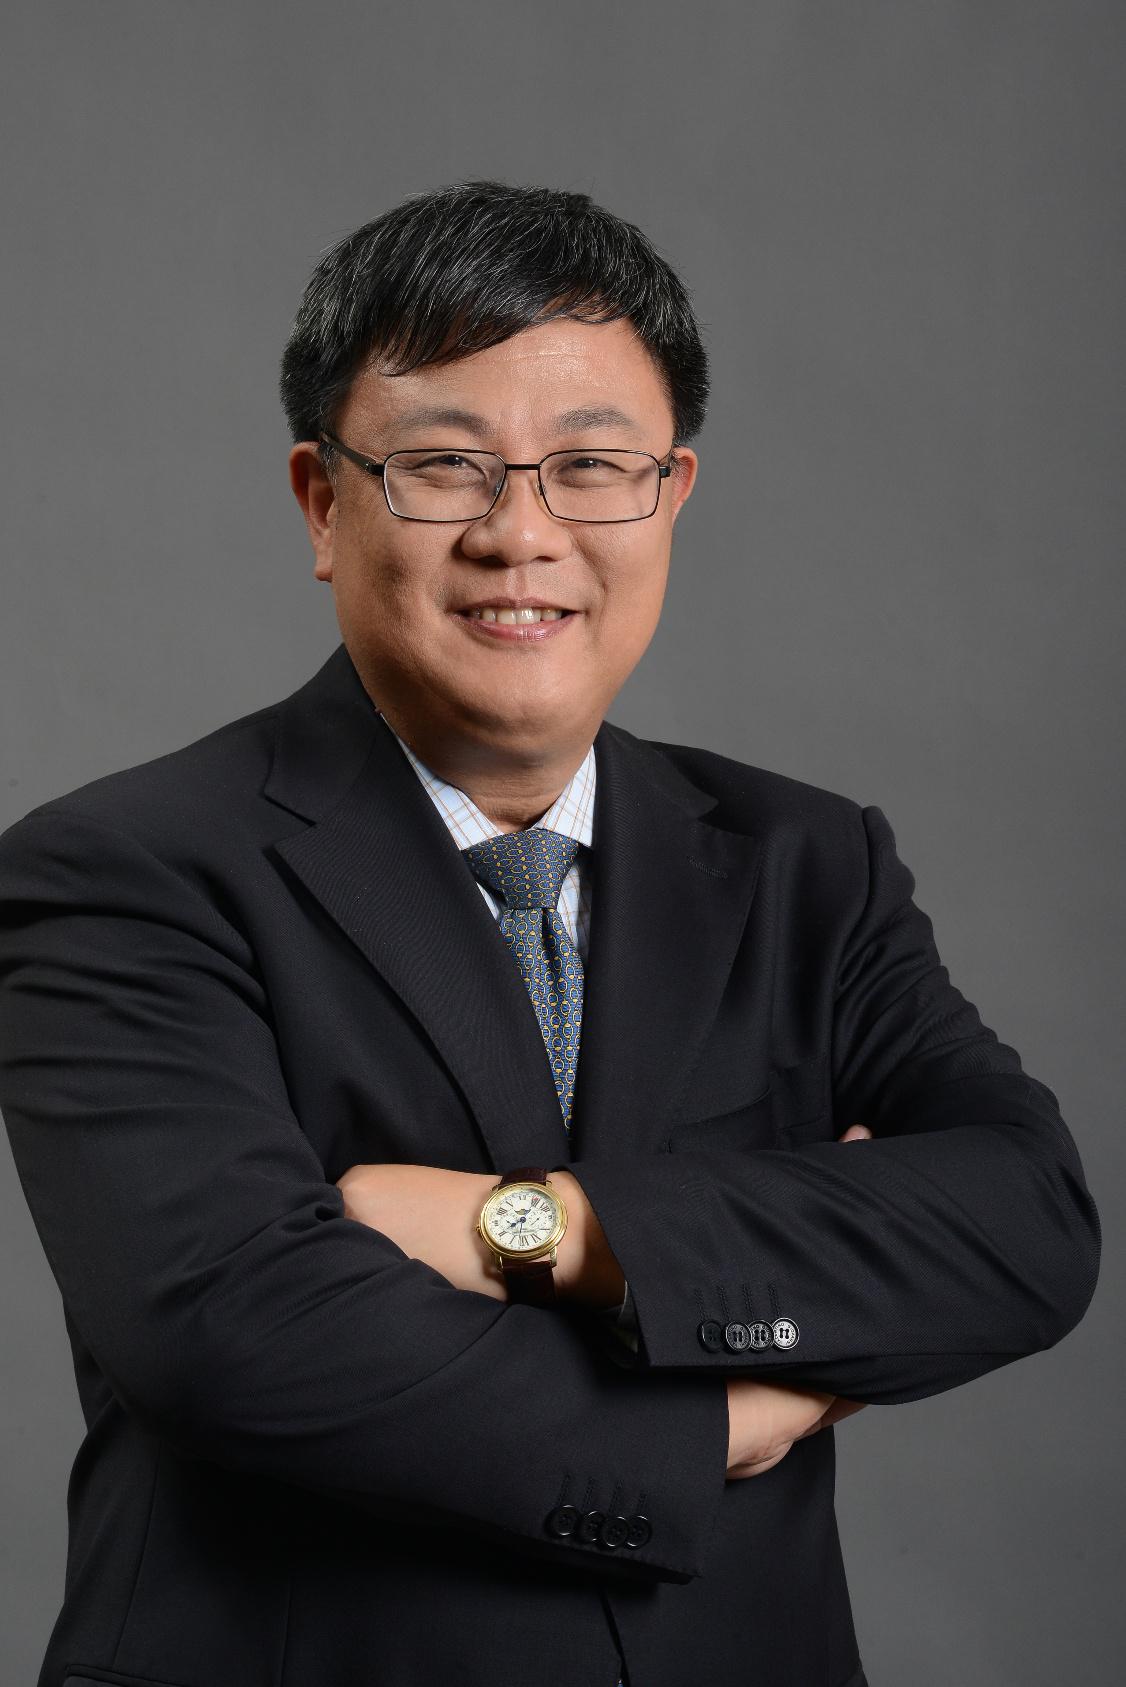 潘曉明(AMD全球副總裁、AMD大中華區總裁)